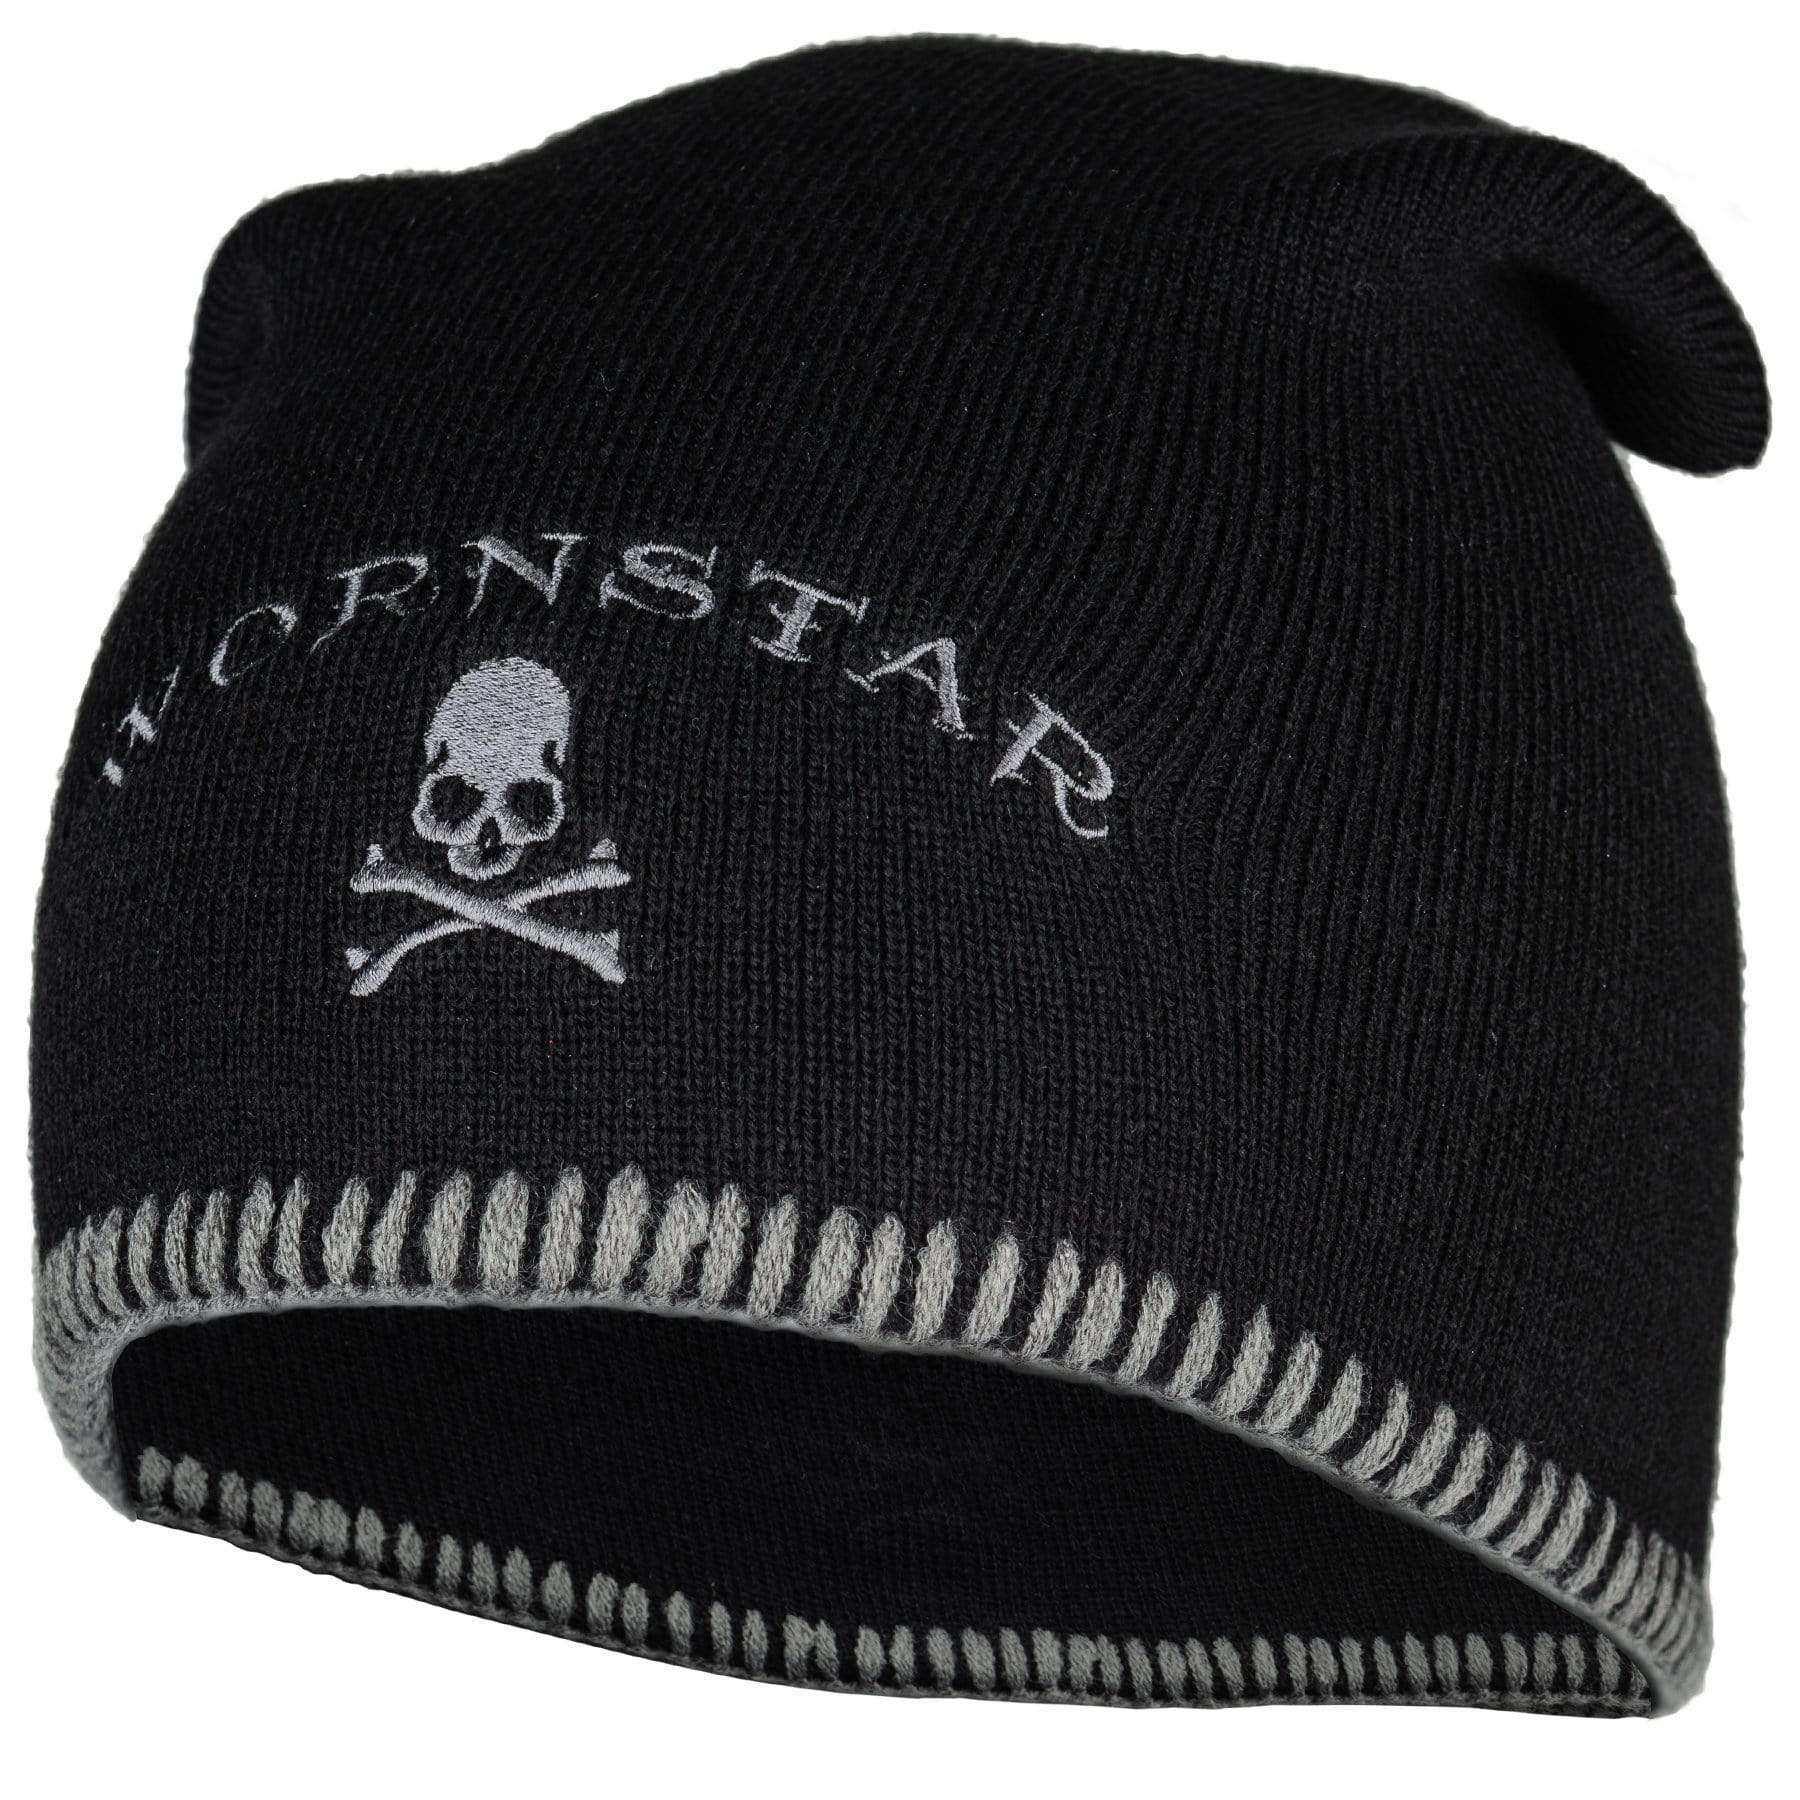 Wornstar Clothing Hat Raider Beanie